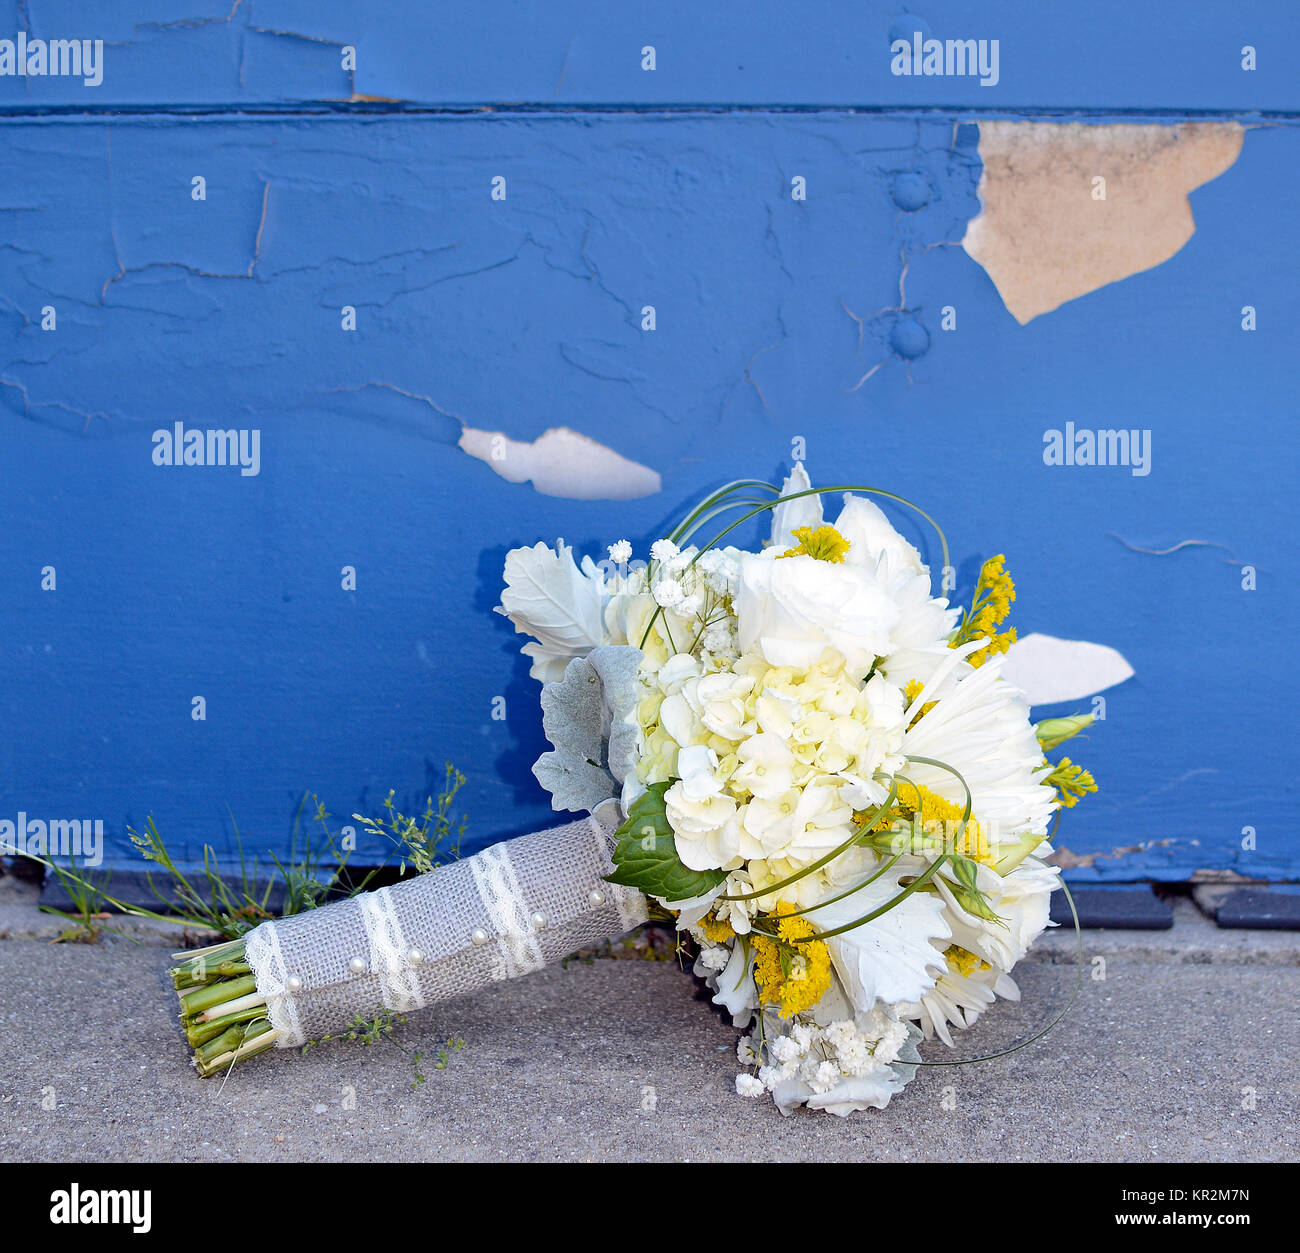 Foto eines Weiße Braut nosegay Blumenstrauß vor einer blauen Wand. Hortensien, Rosen, Mamas, Atem Baby's, Akzente von Dusty Miller und saladago. Reizend! Stockfoto